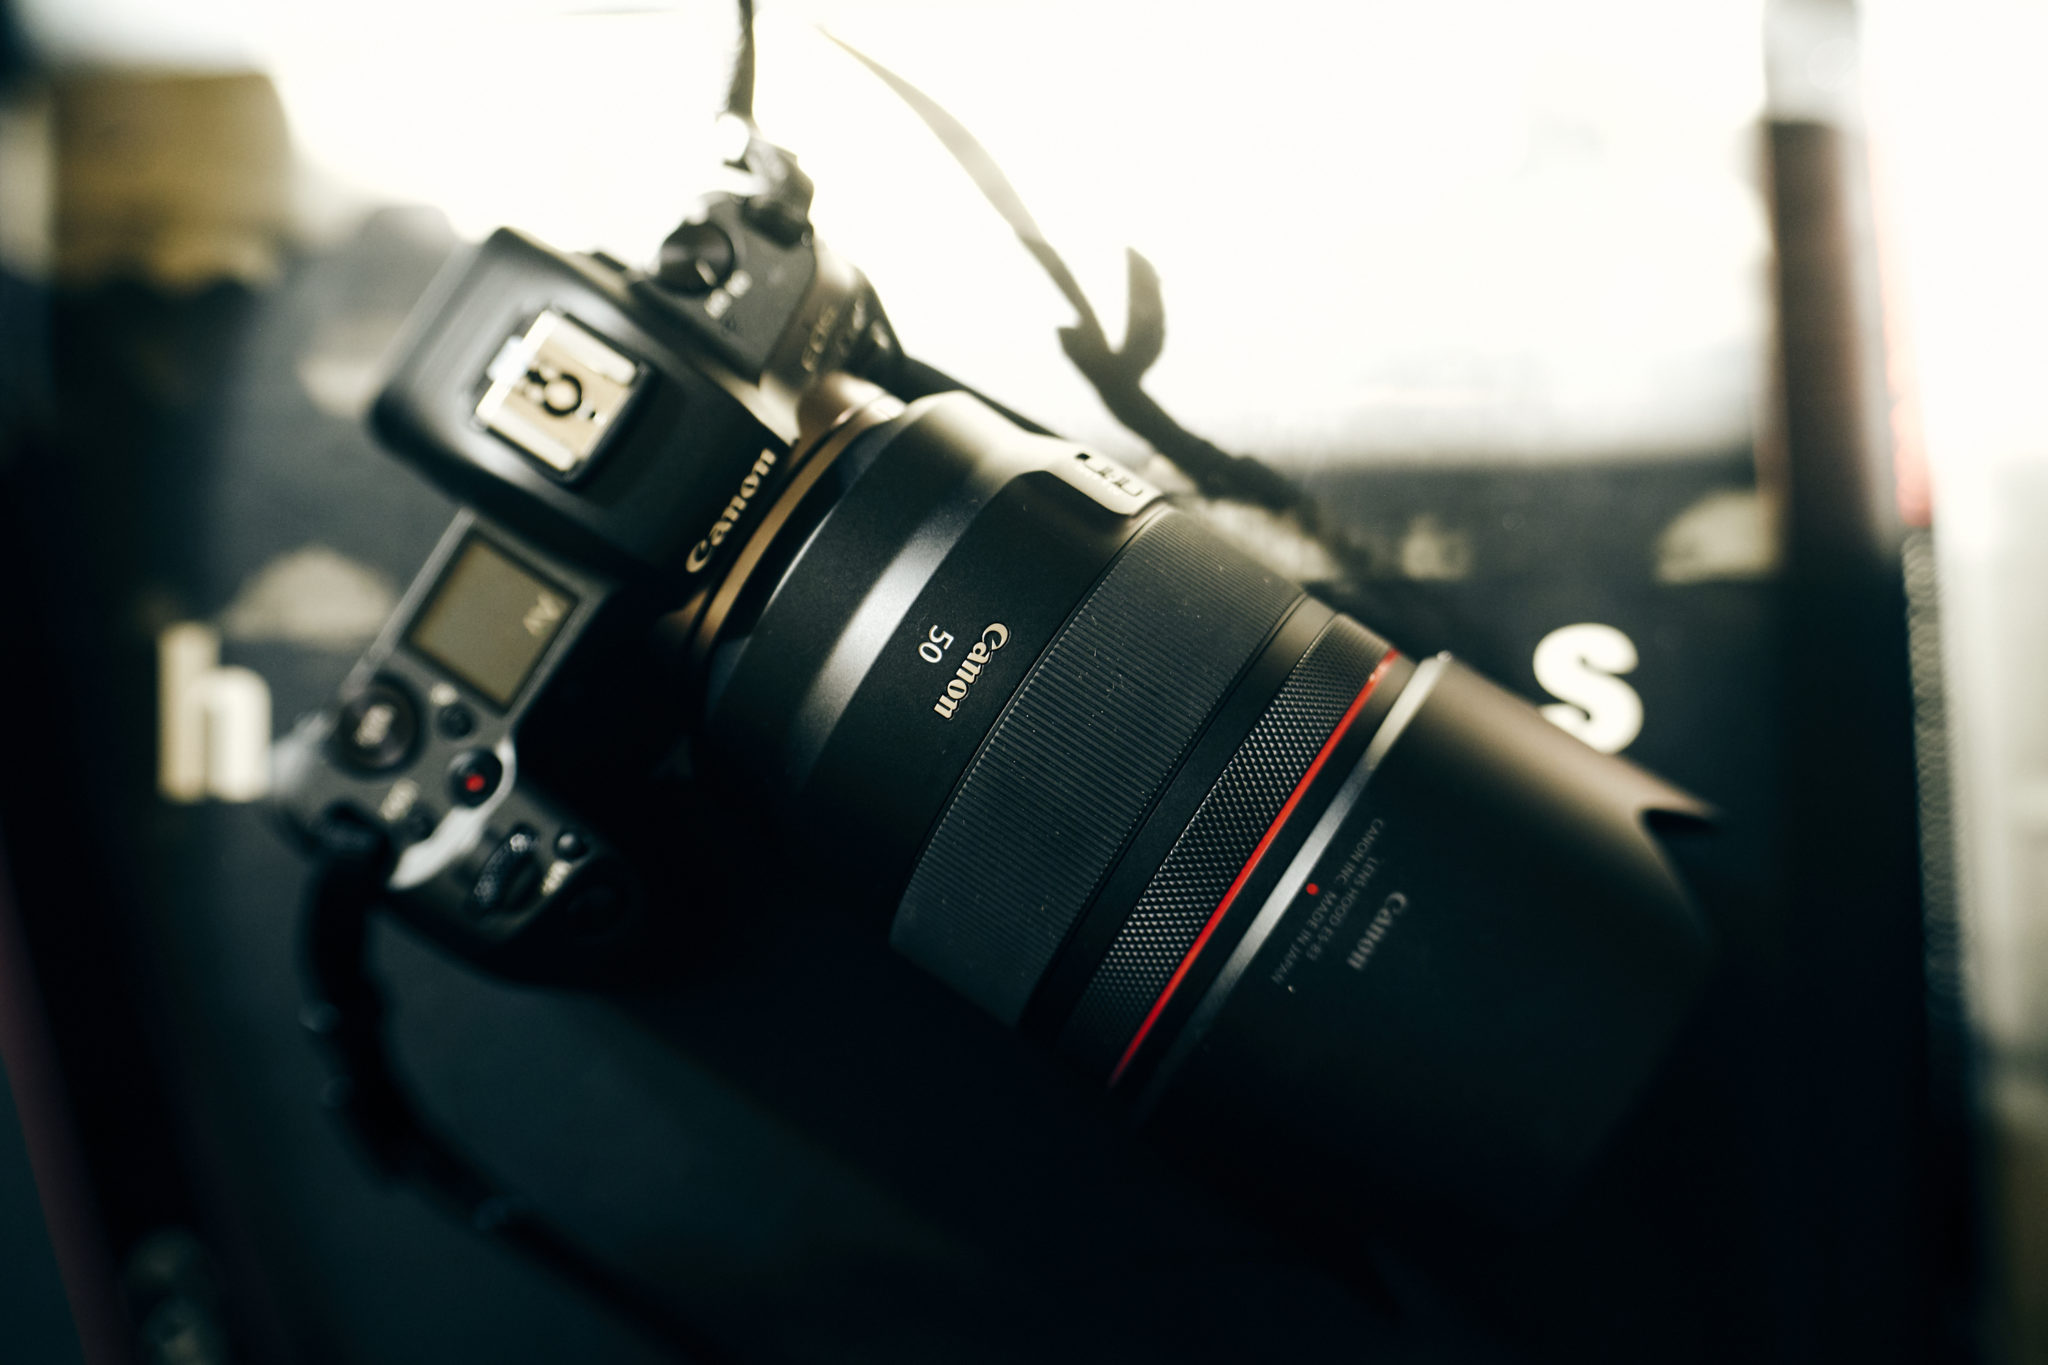 Cámara fotográfica Canon EOS R EF-R 24-105MM IS USM CANON